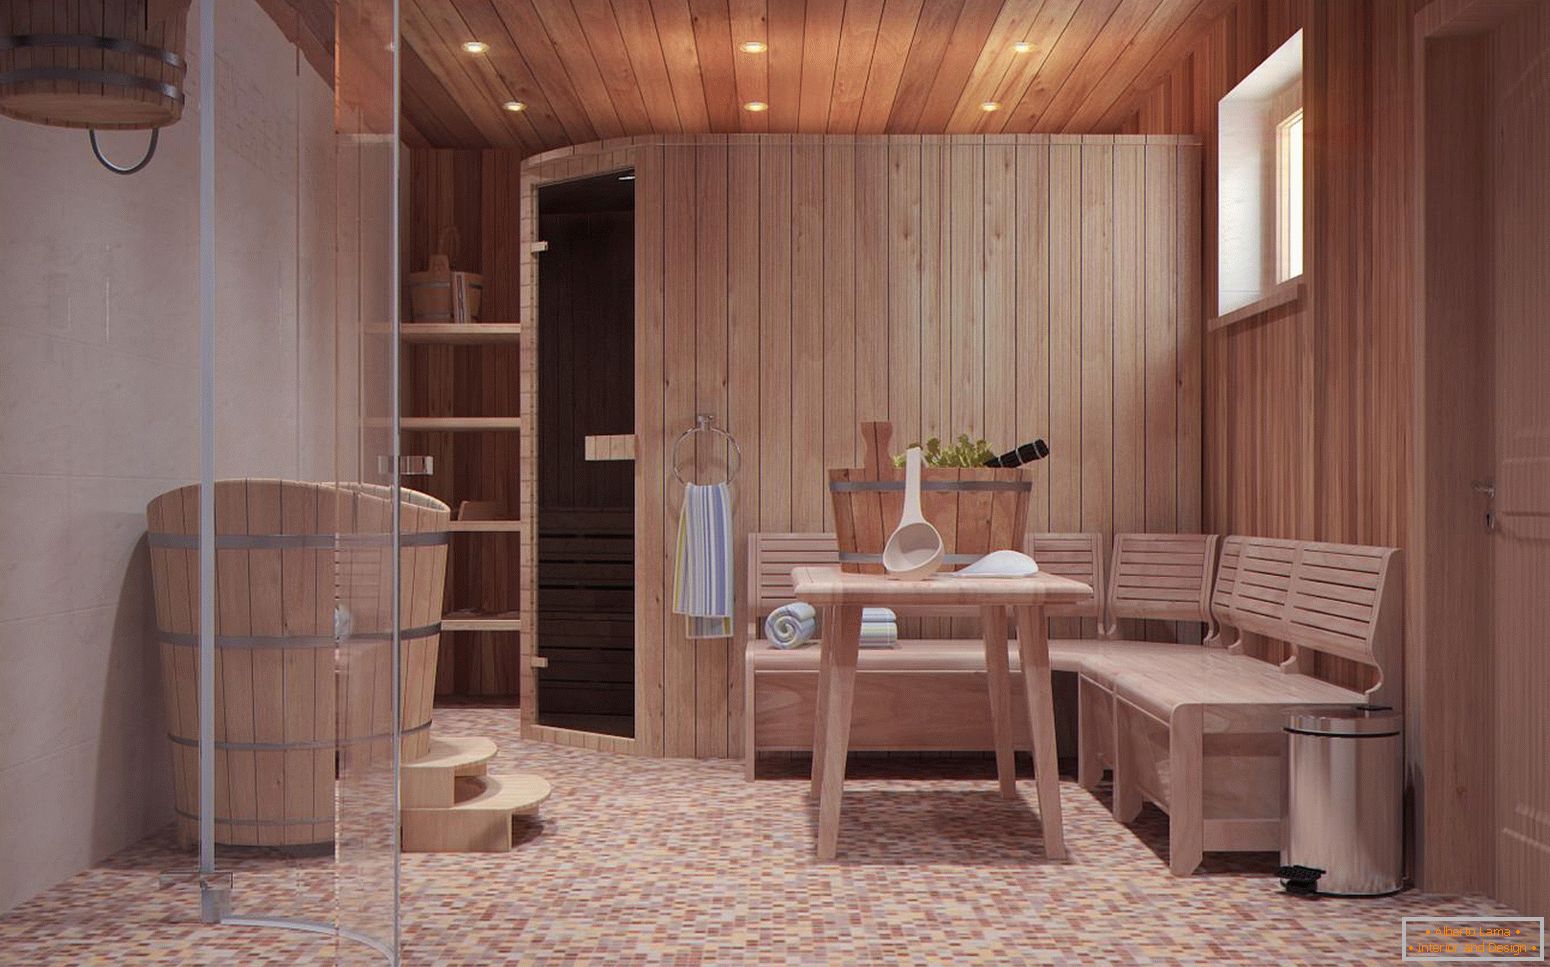 Pokój relaksacyjny w łaźni w stylu skandynawskim